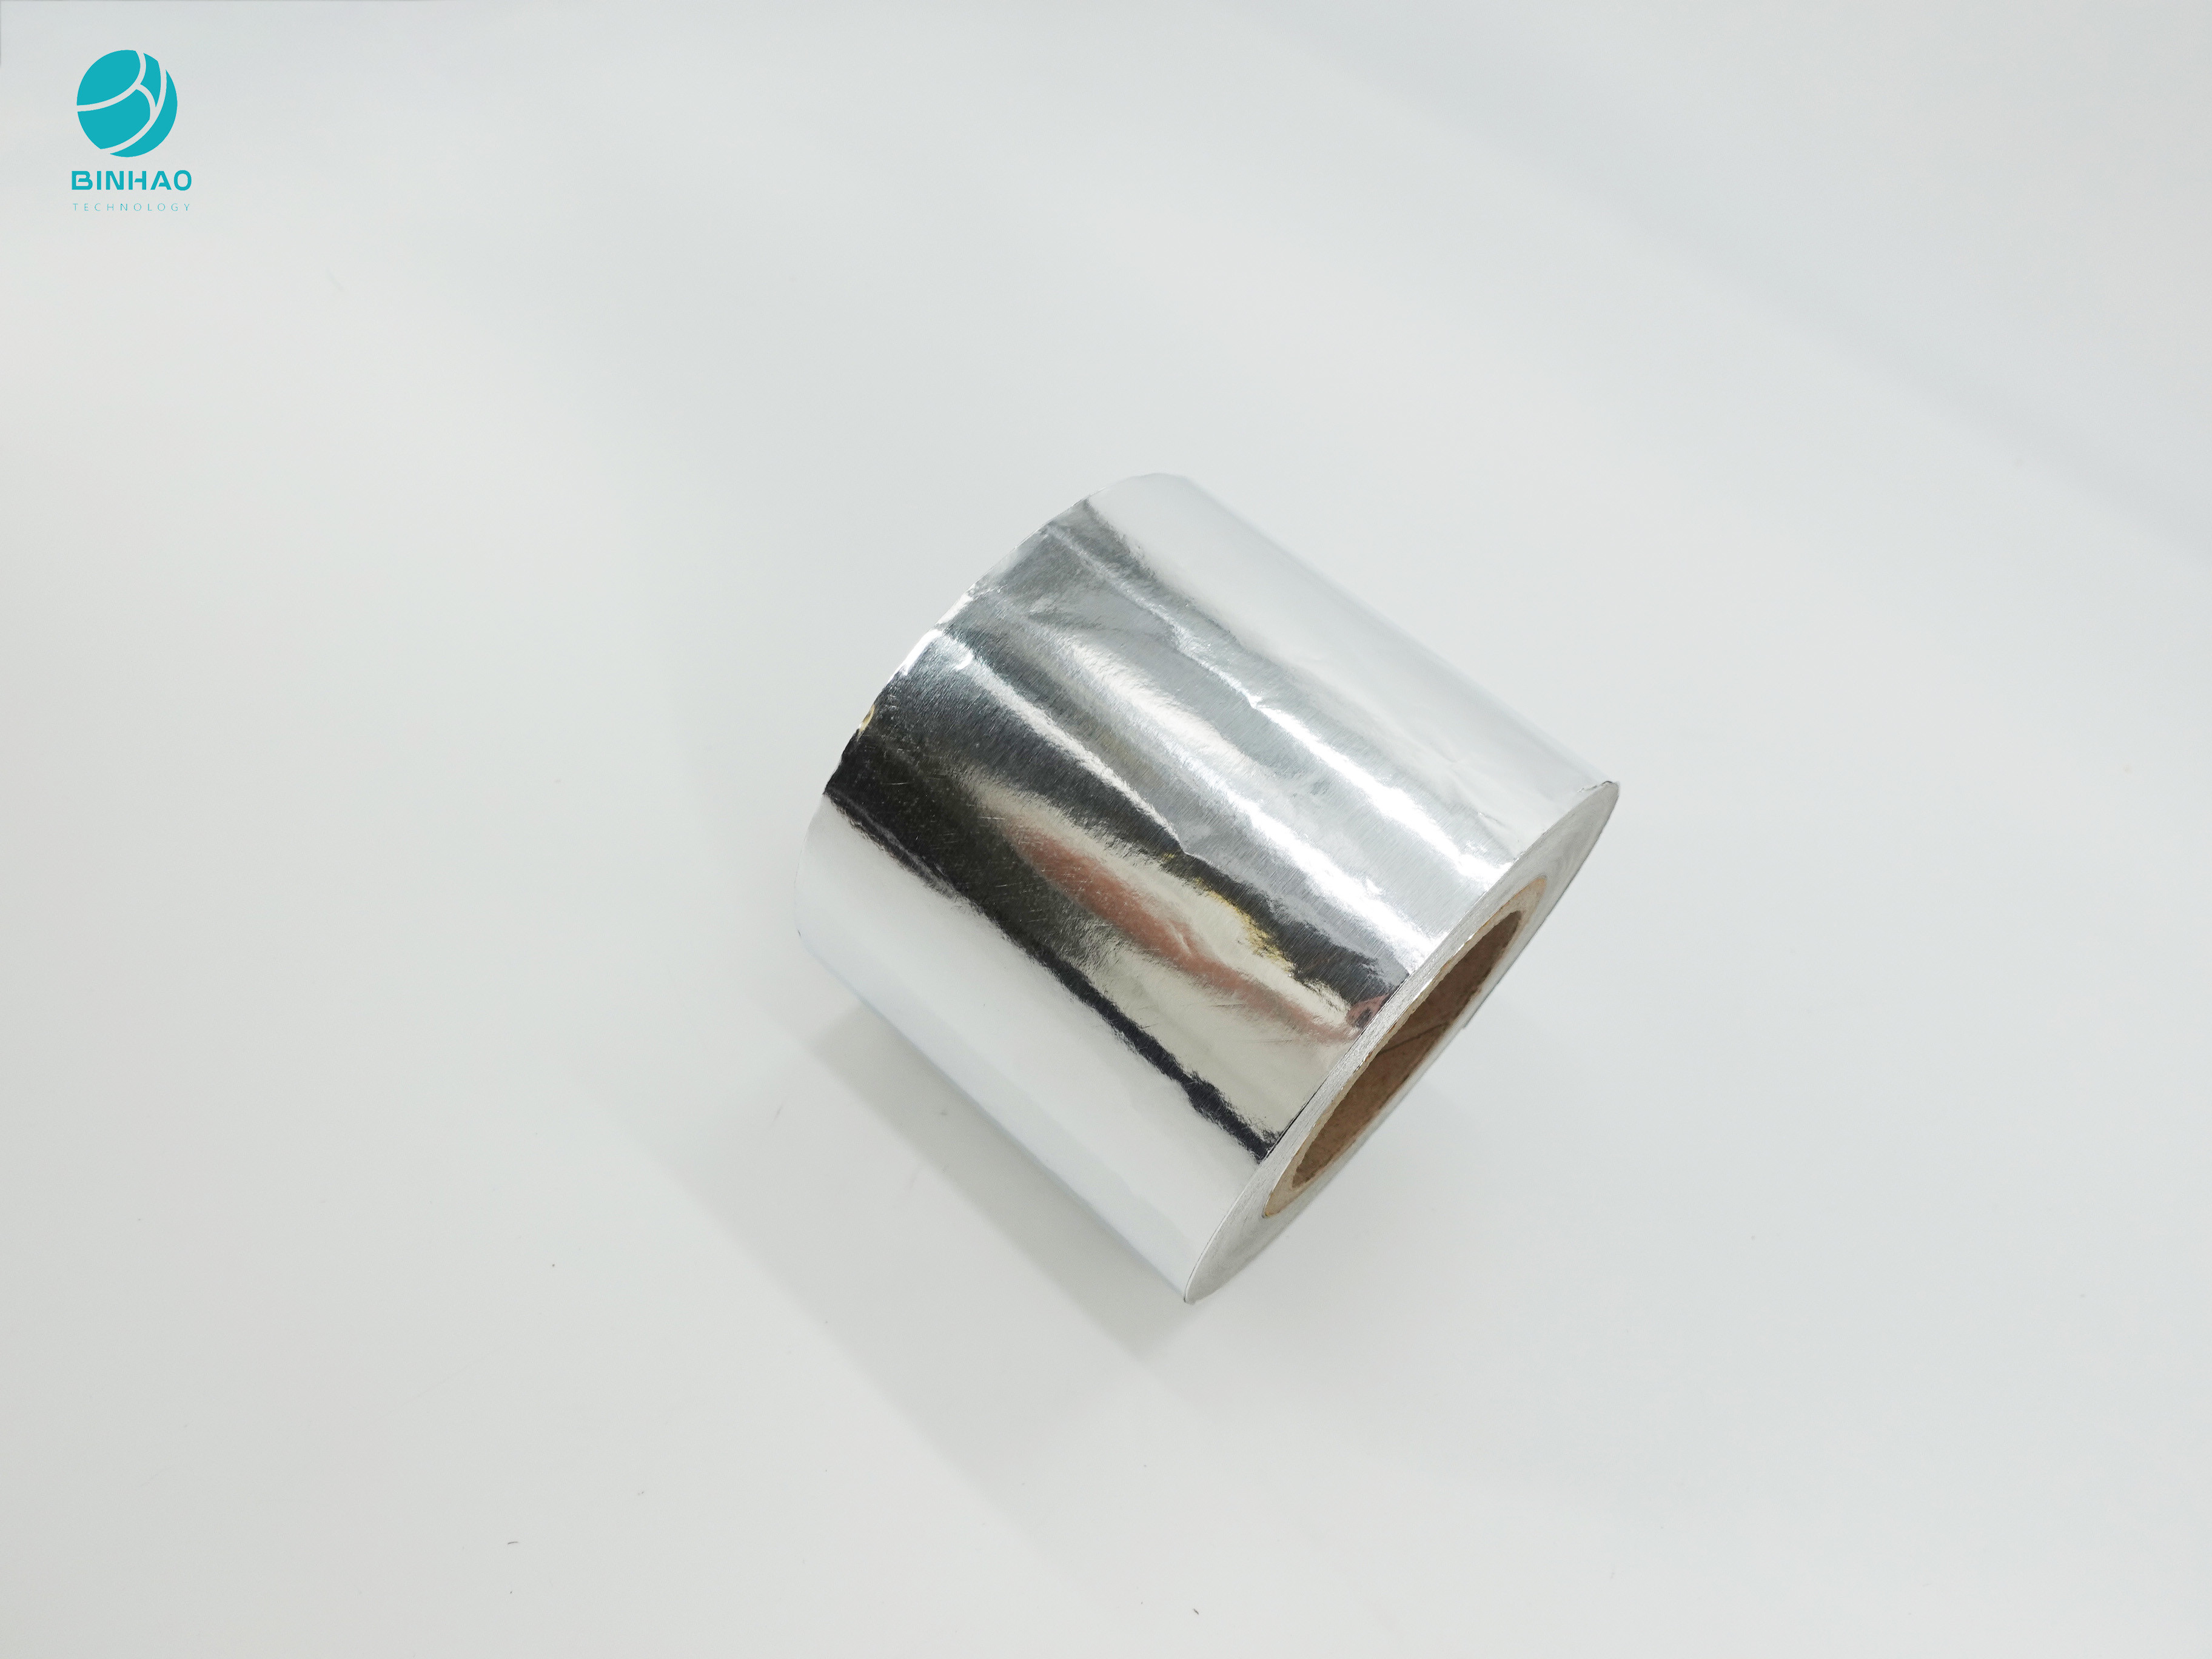 담배 내부 패키지를 위한 종이를 감싸는 식품 등급 은 알루미늄 호일